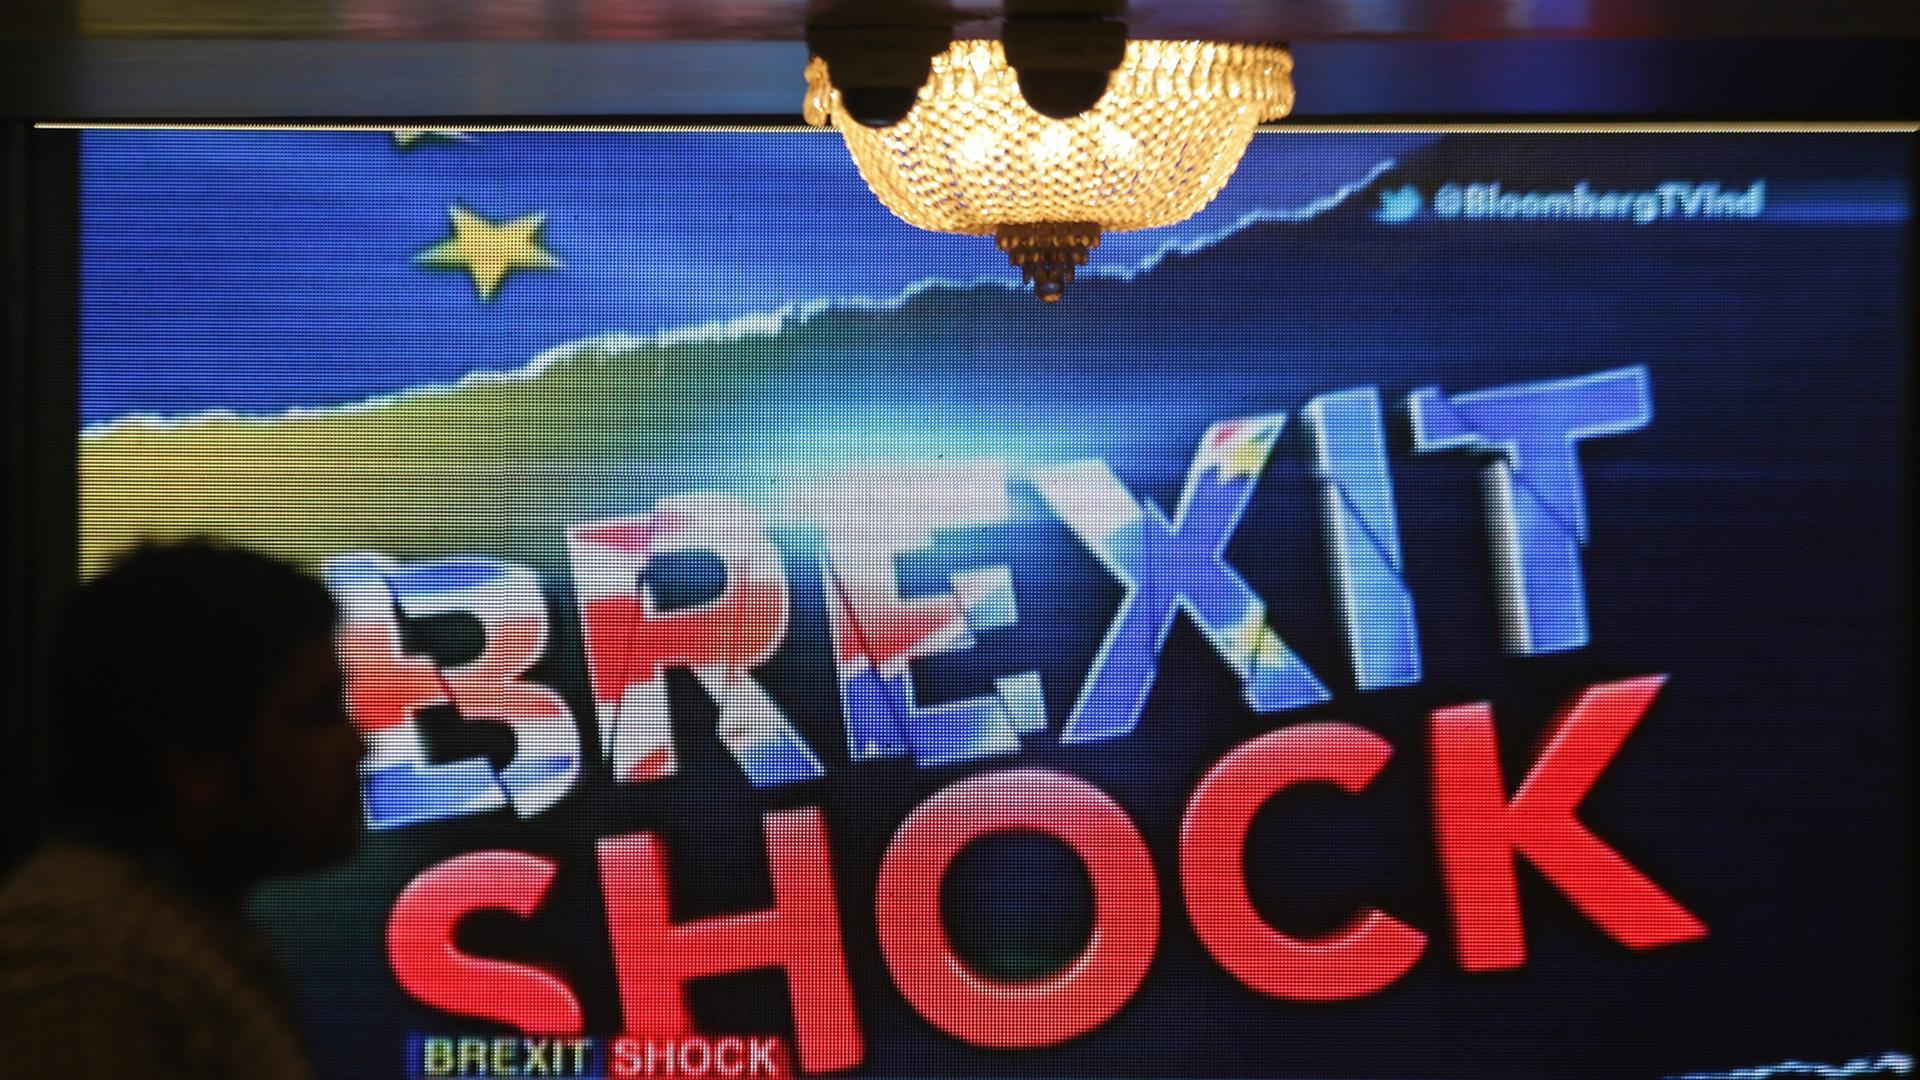 "Brexit Shock" - die News der britischen Entscheidung für den EU-Austritt an der Börse in Mumbai in Indien